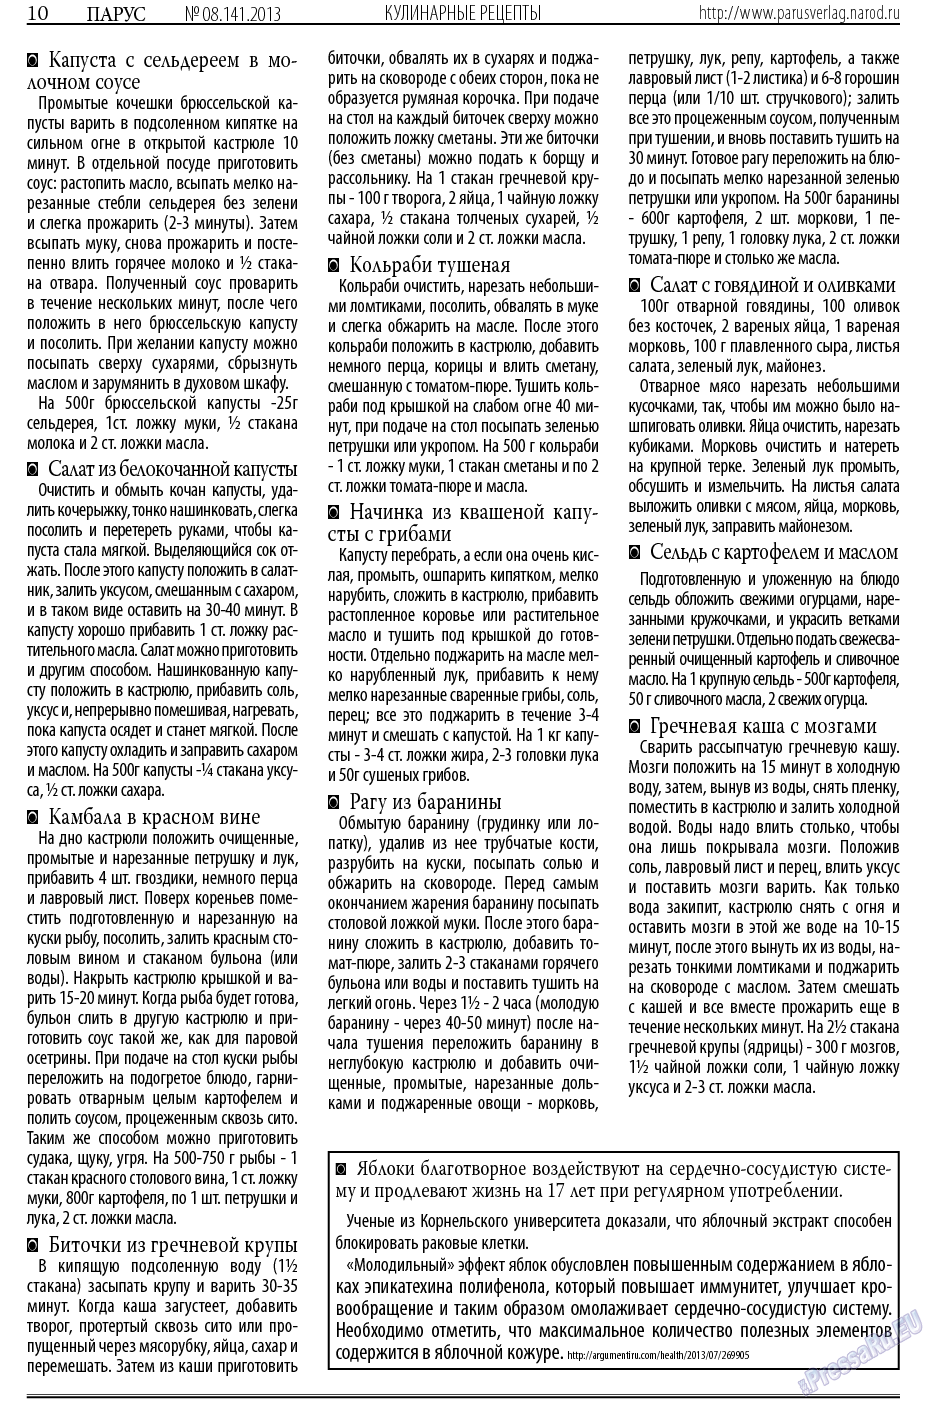 Парус (газета). 2013 год, номер 8, стр. 10